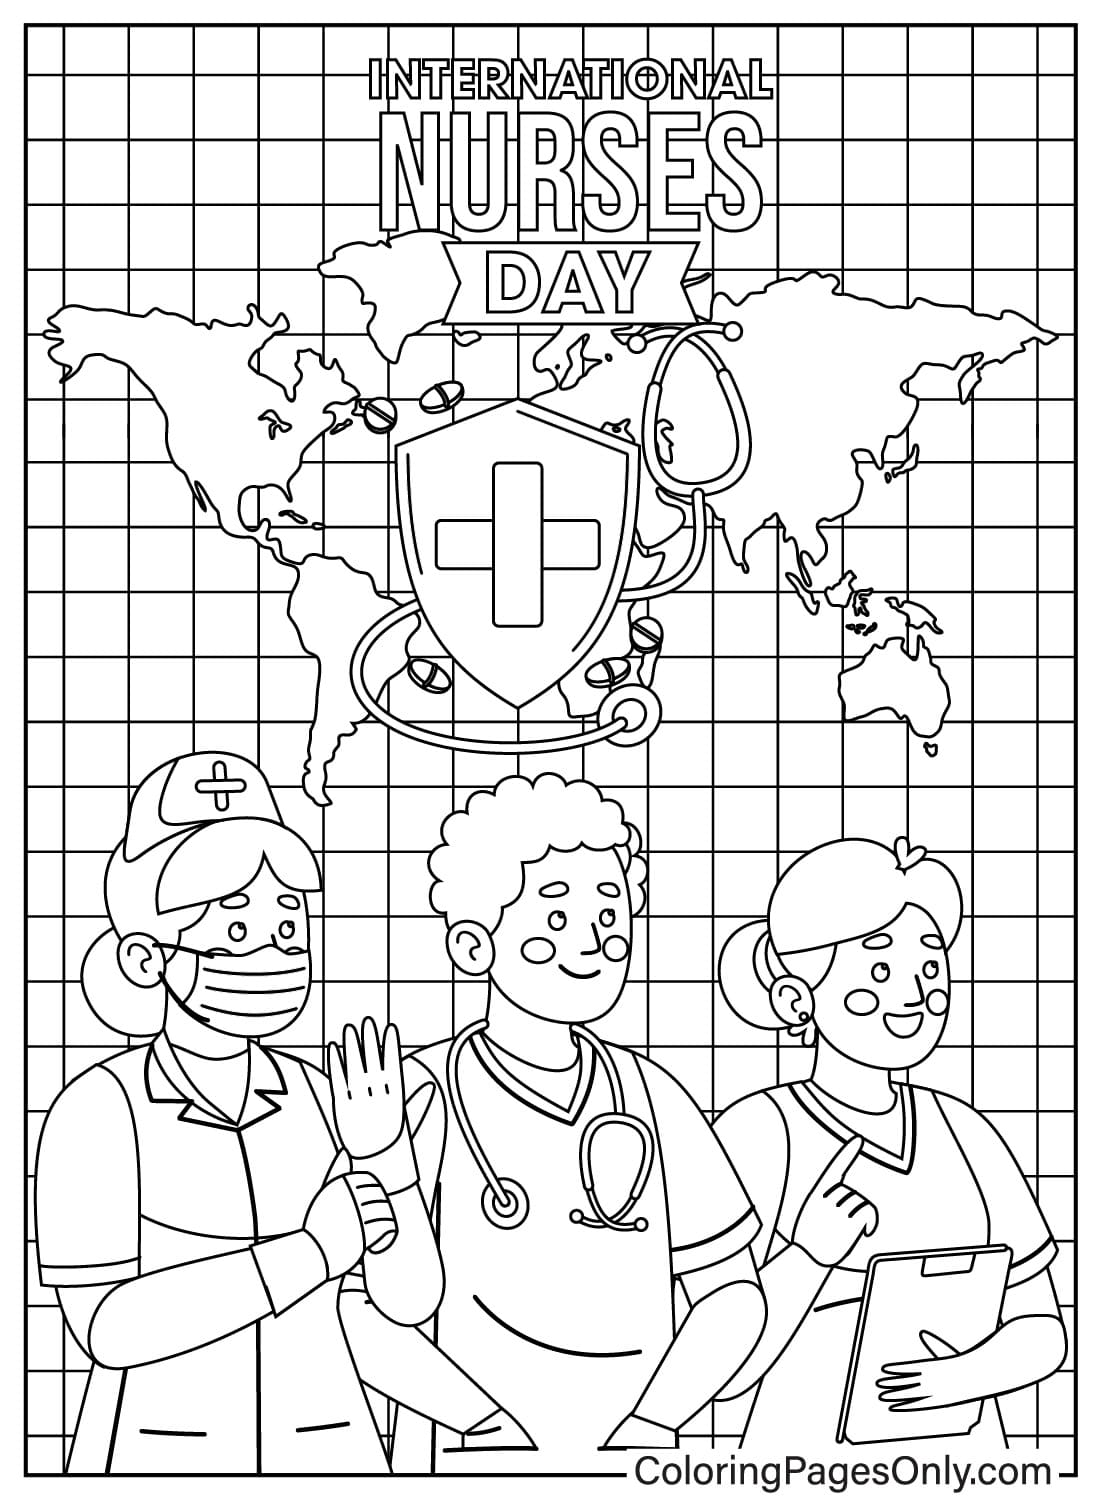 Página para colorear del Día Internacional de la Enfermera para niños de Nurse